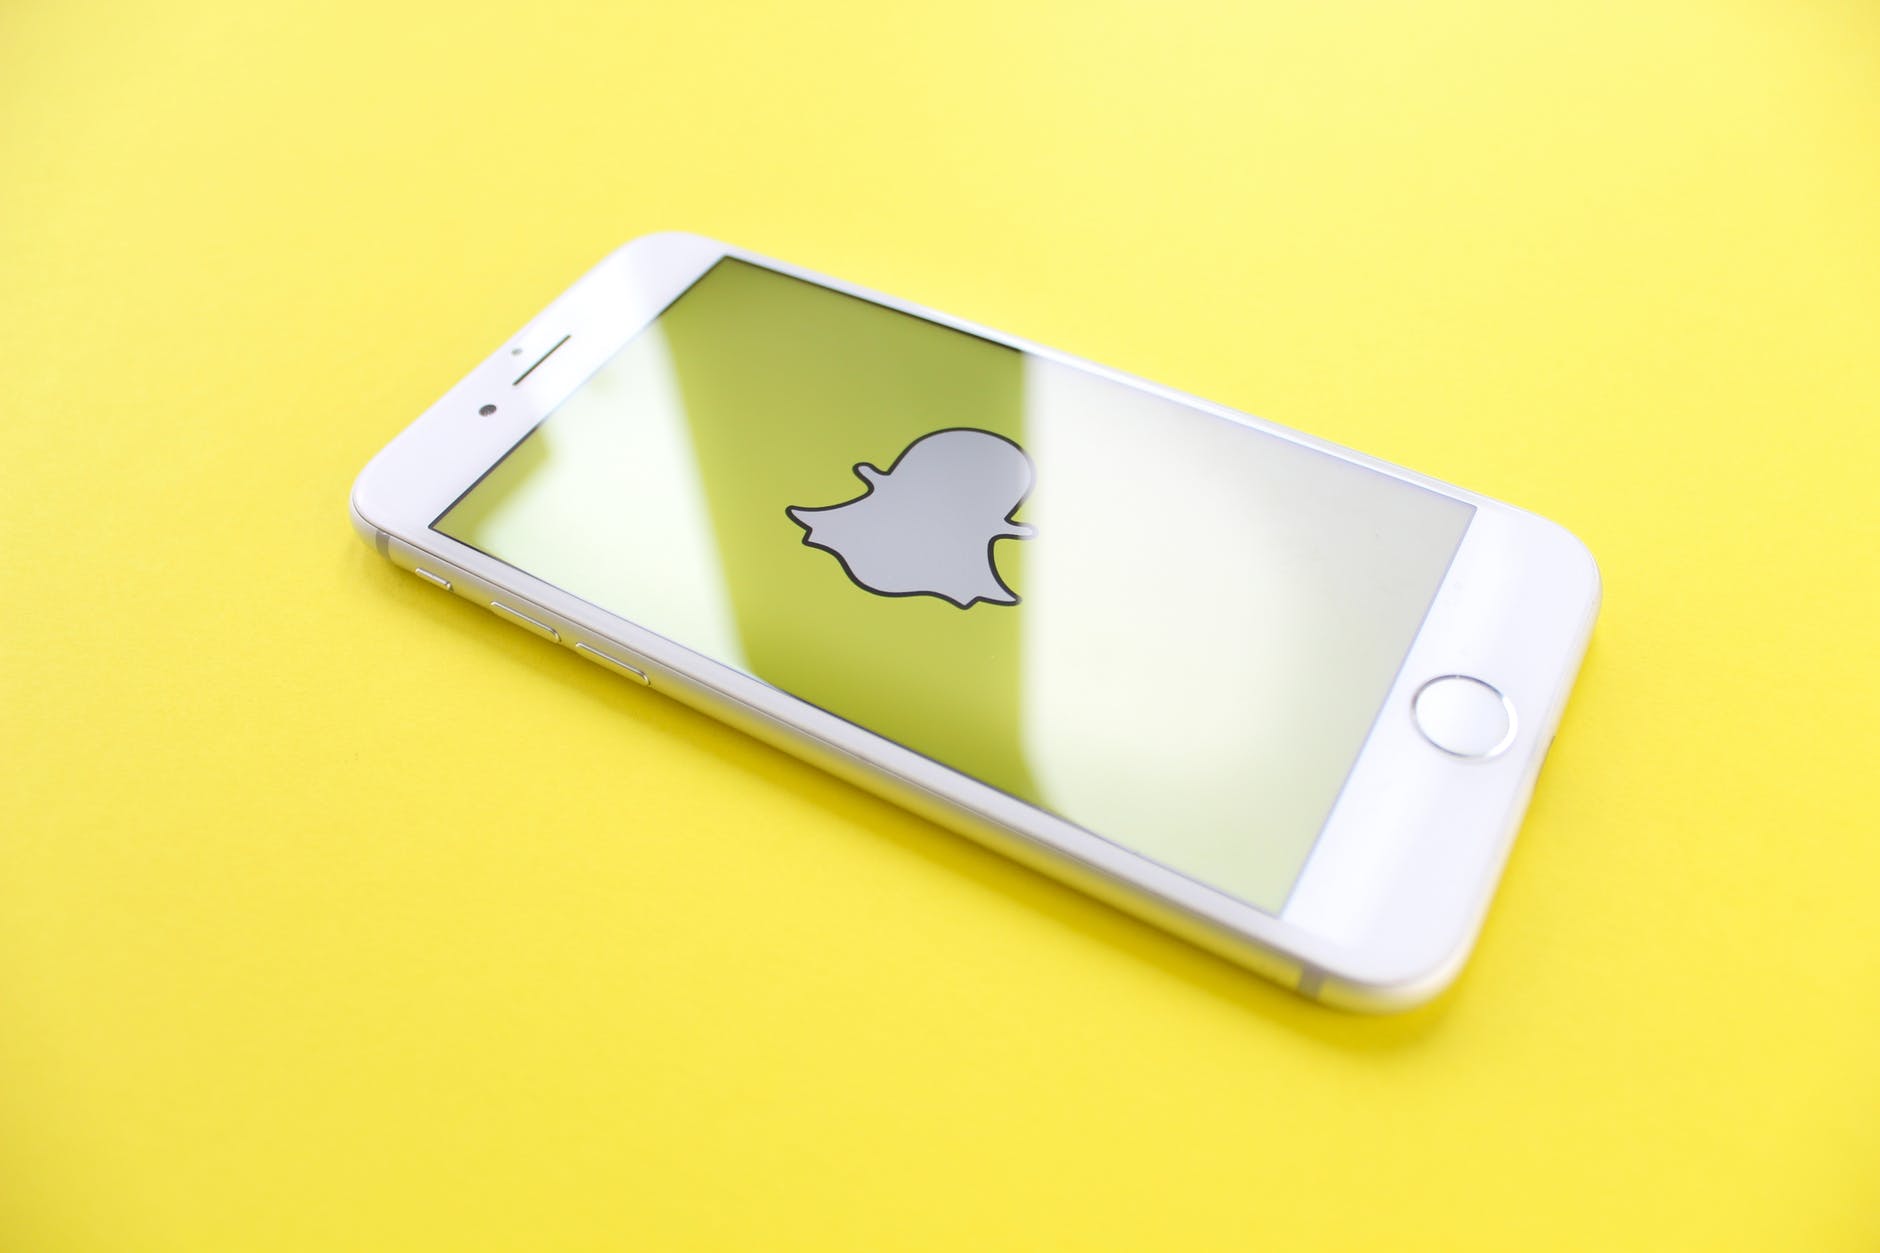 Snapchat y Ticketmaster se unen para crear una nueva experiencia en eventos